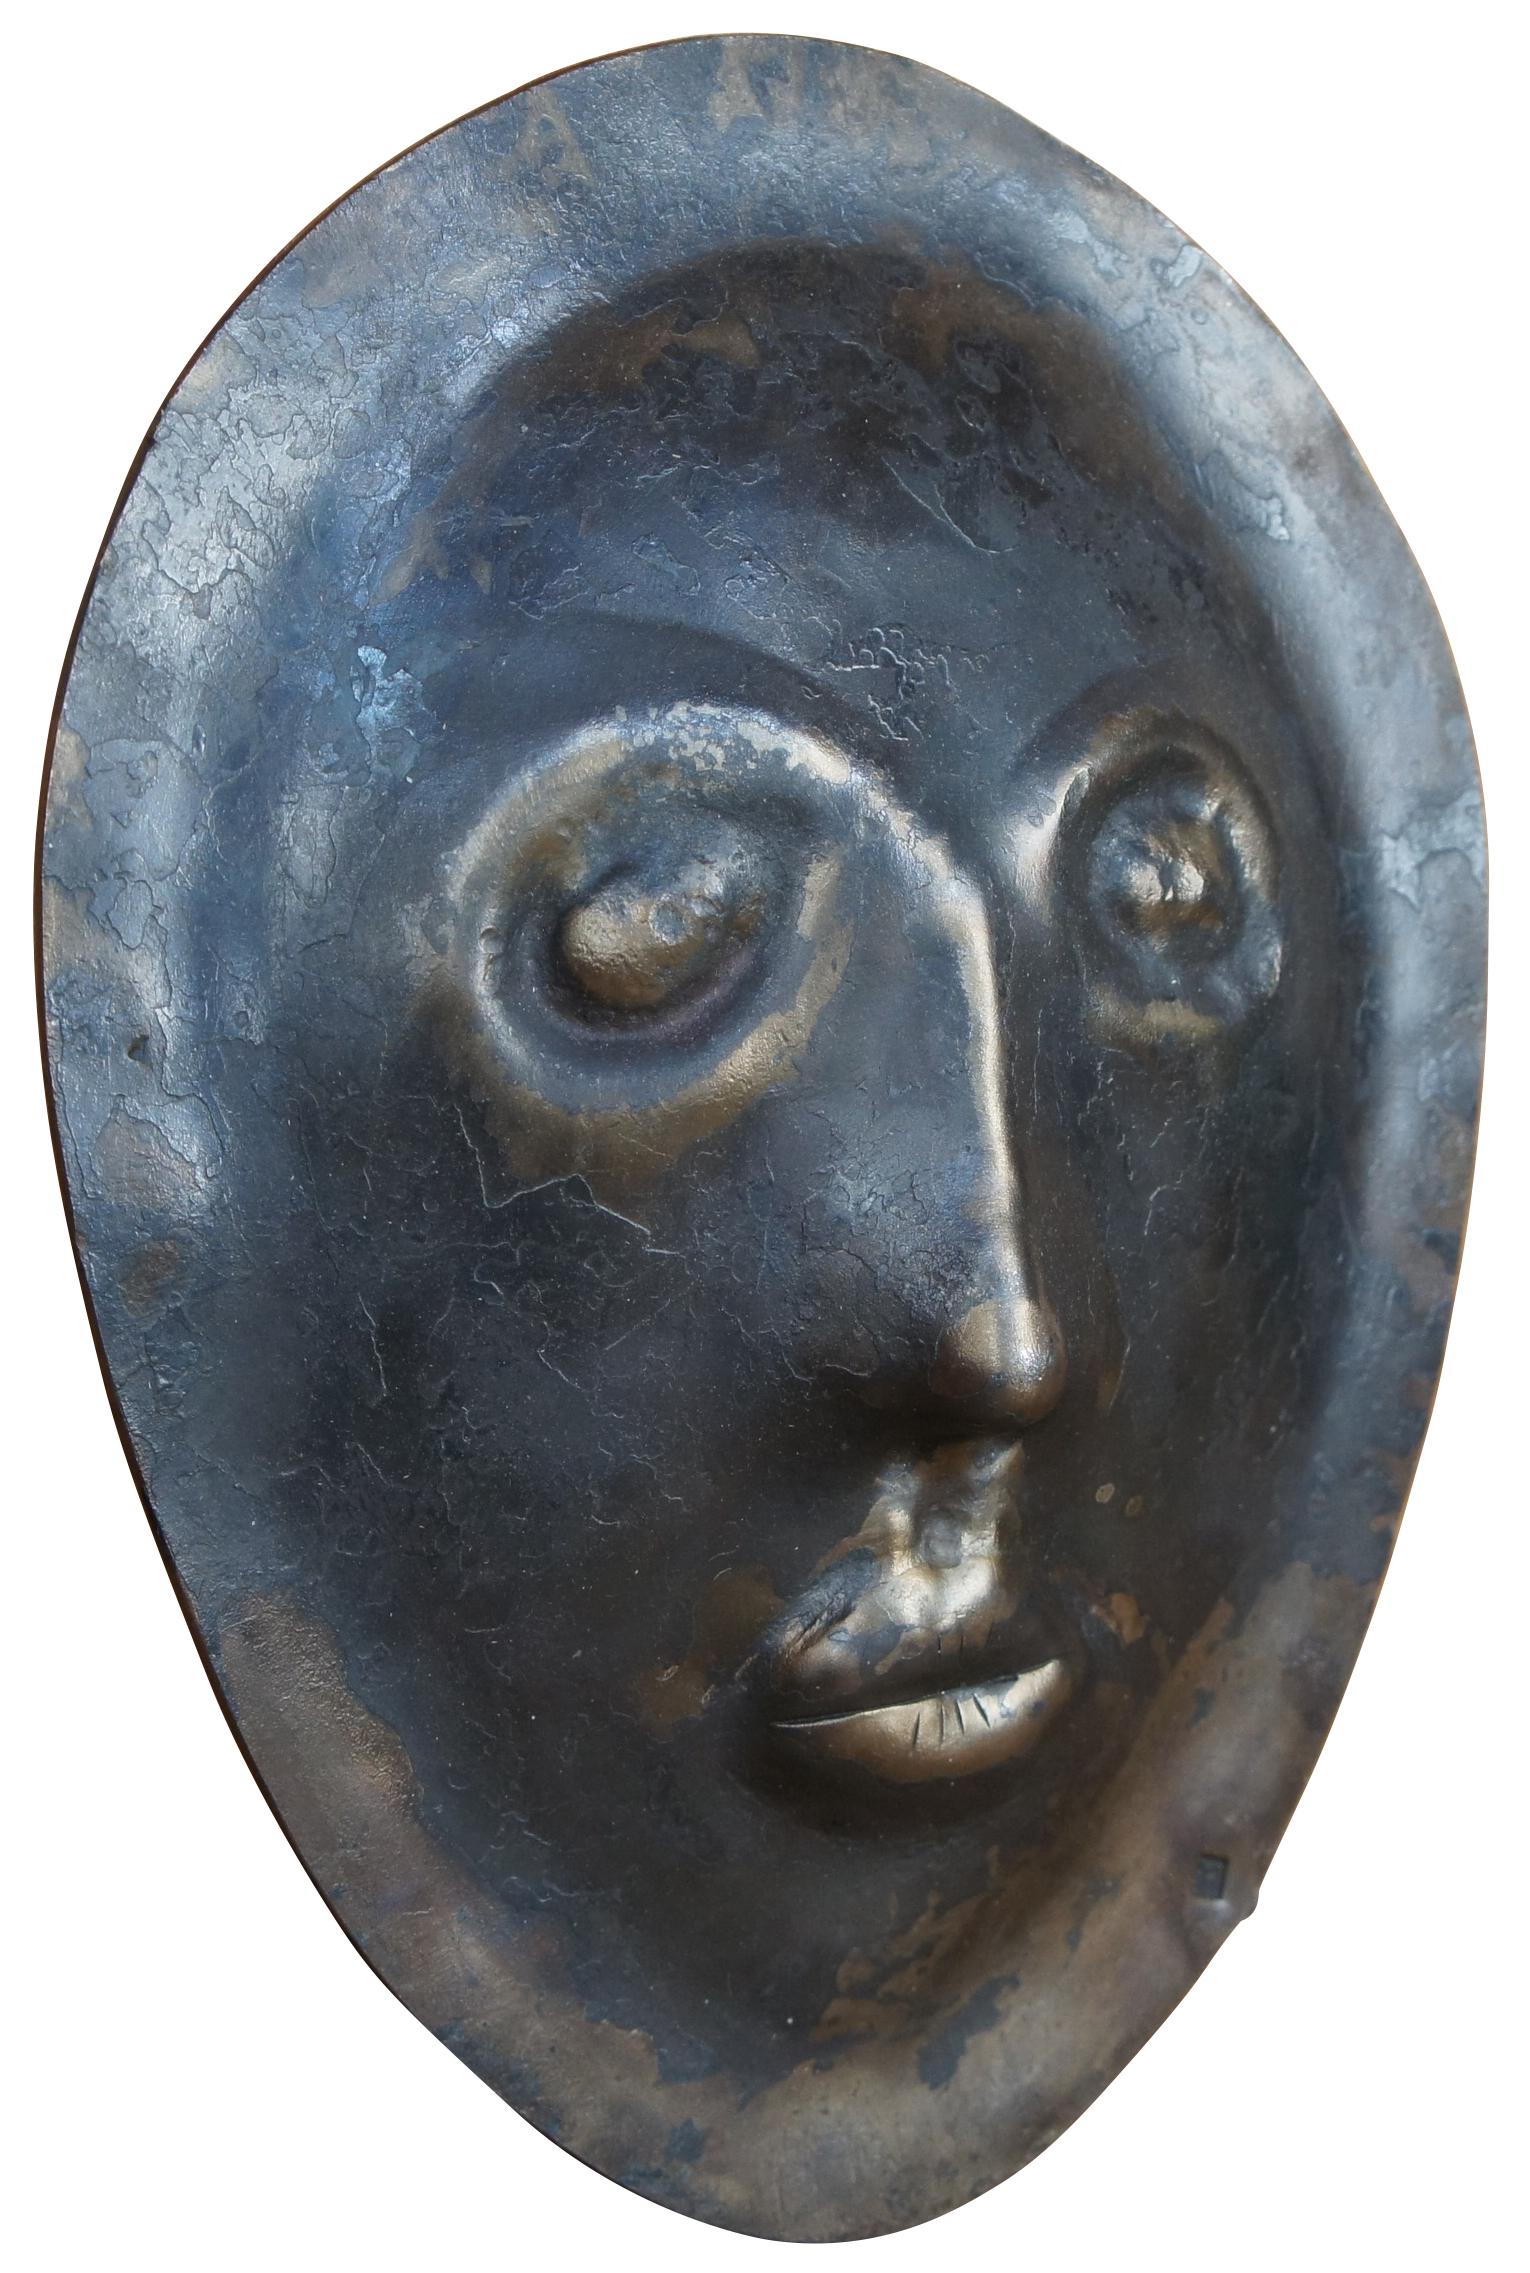 Masque funéraire en fer lourd, sculpture d'art moderne, avec un visage aplati et sans expression.  Estampillé TM.